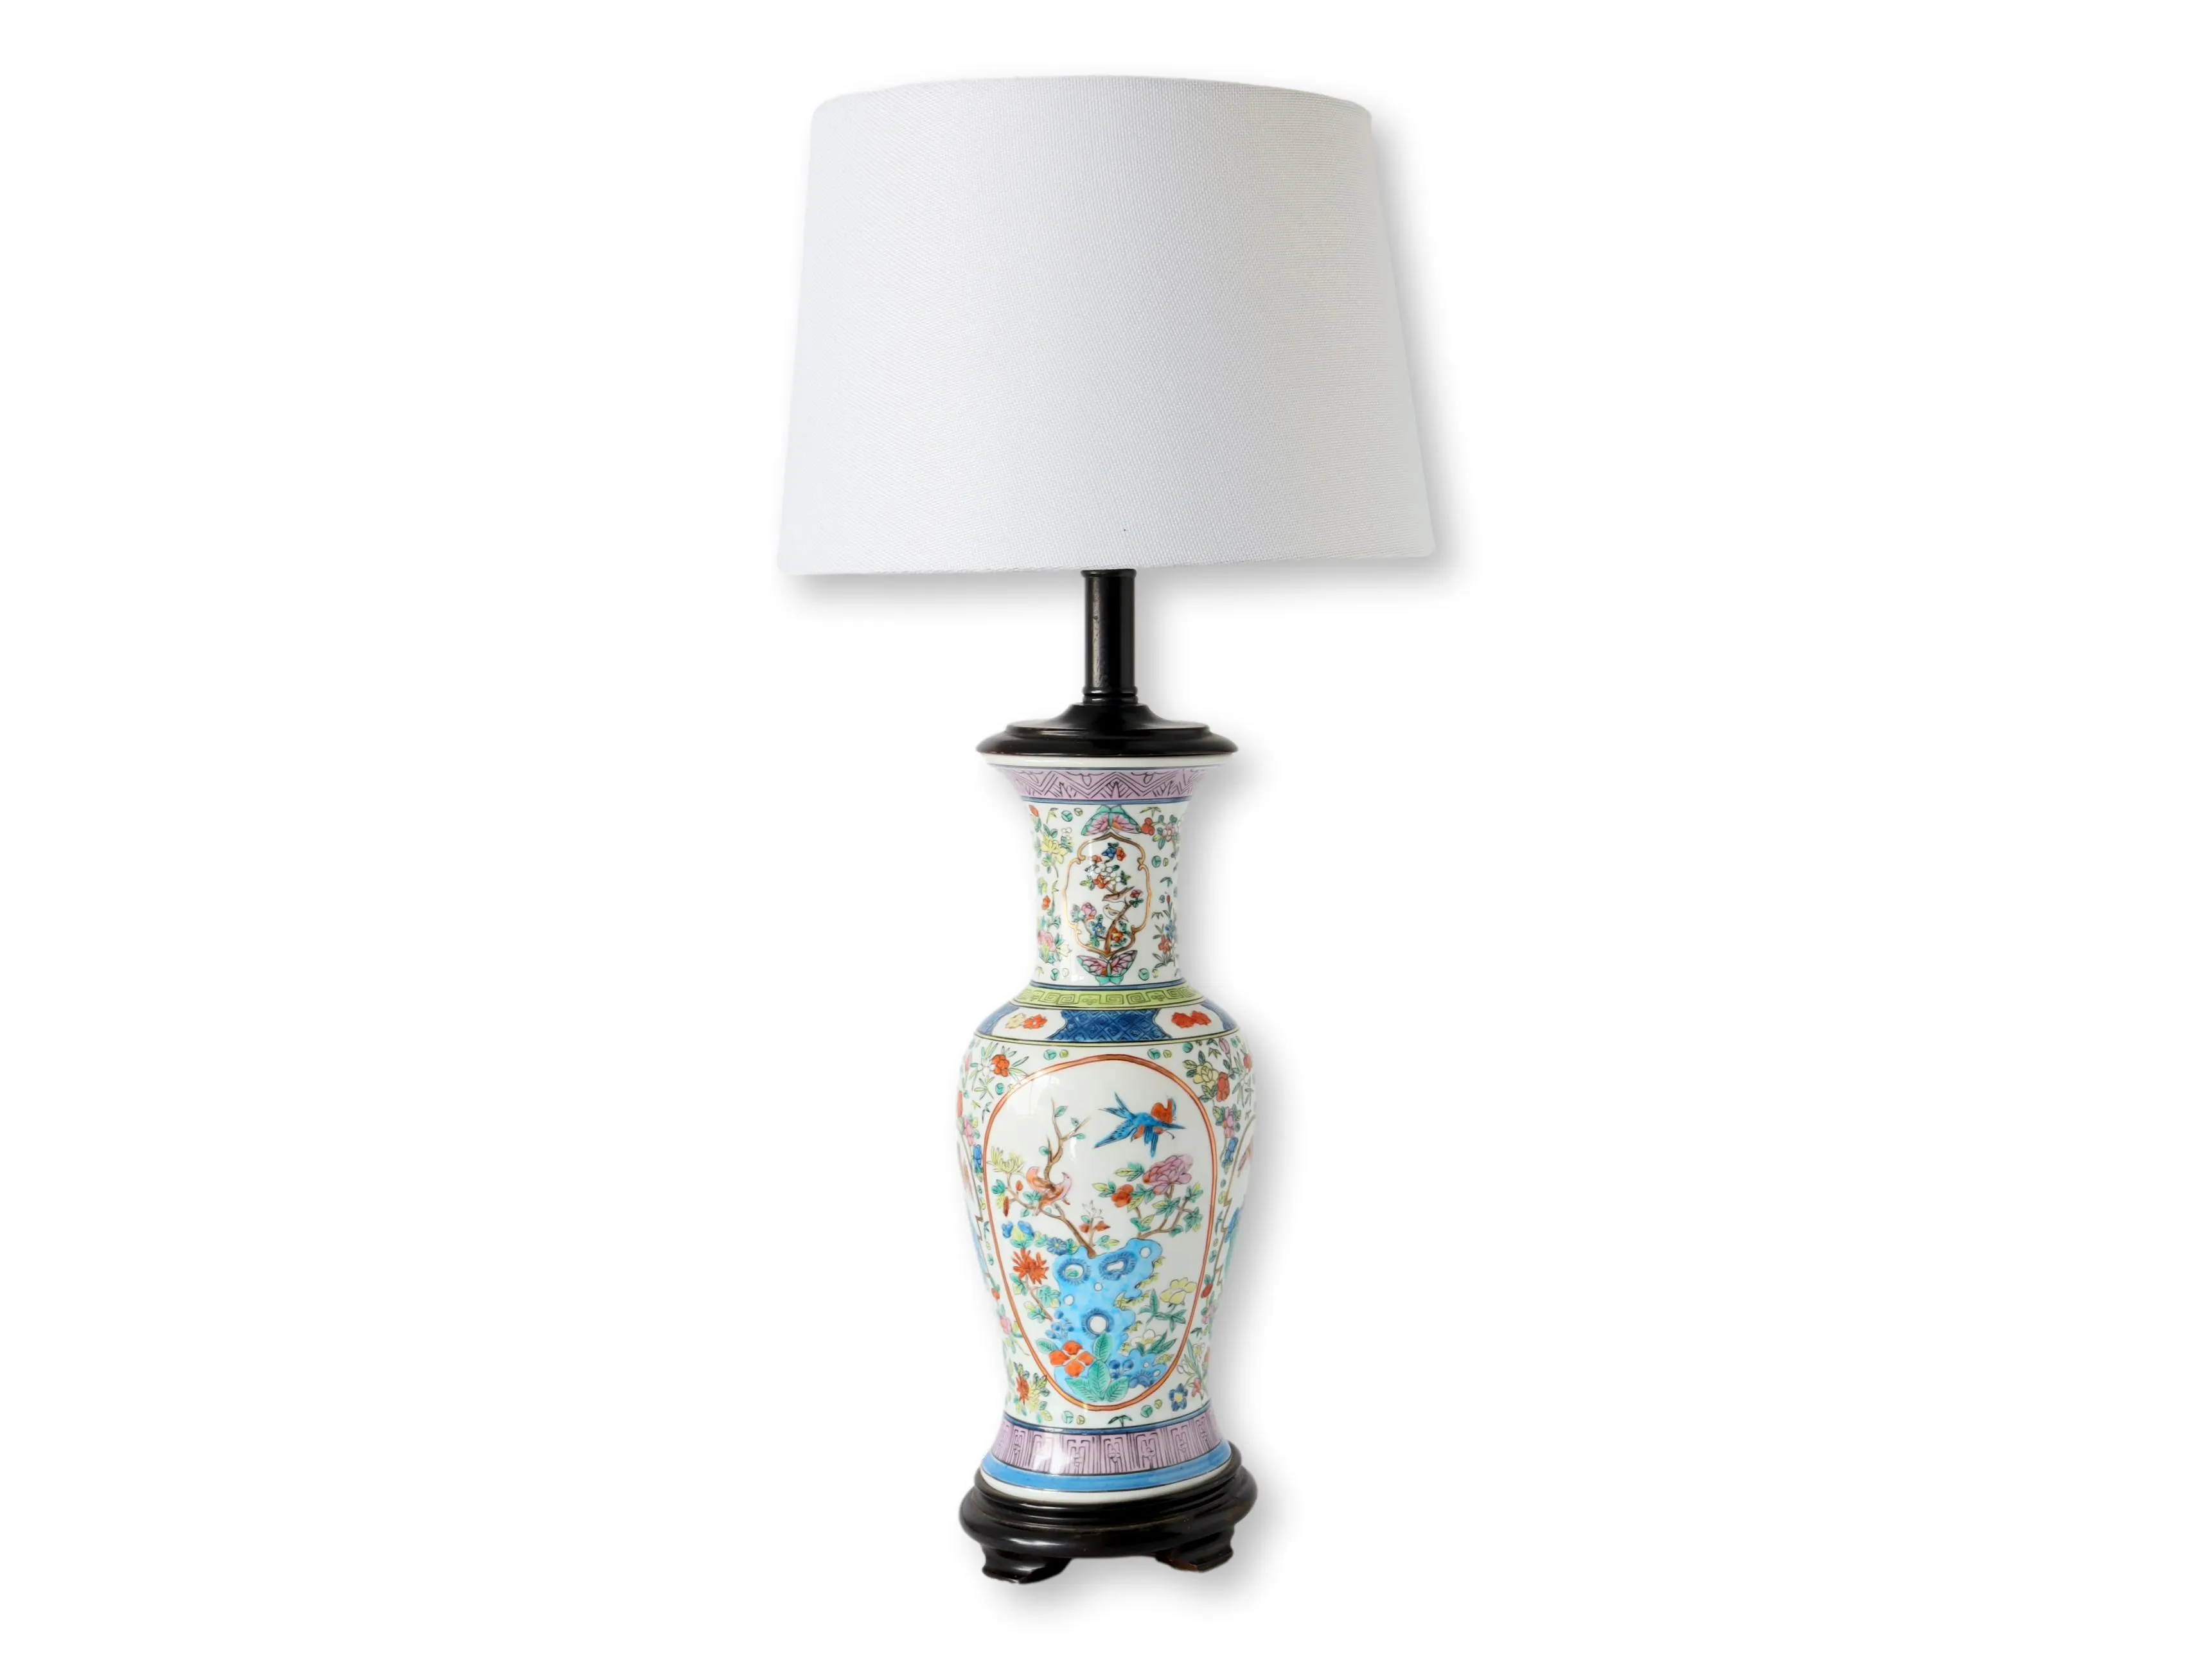 1950s Japan Famille Rose Urn / Vase Lamp - Beige